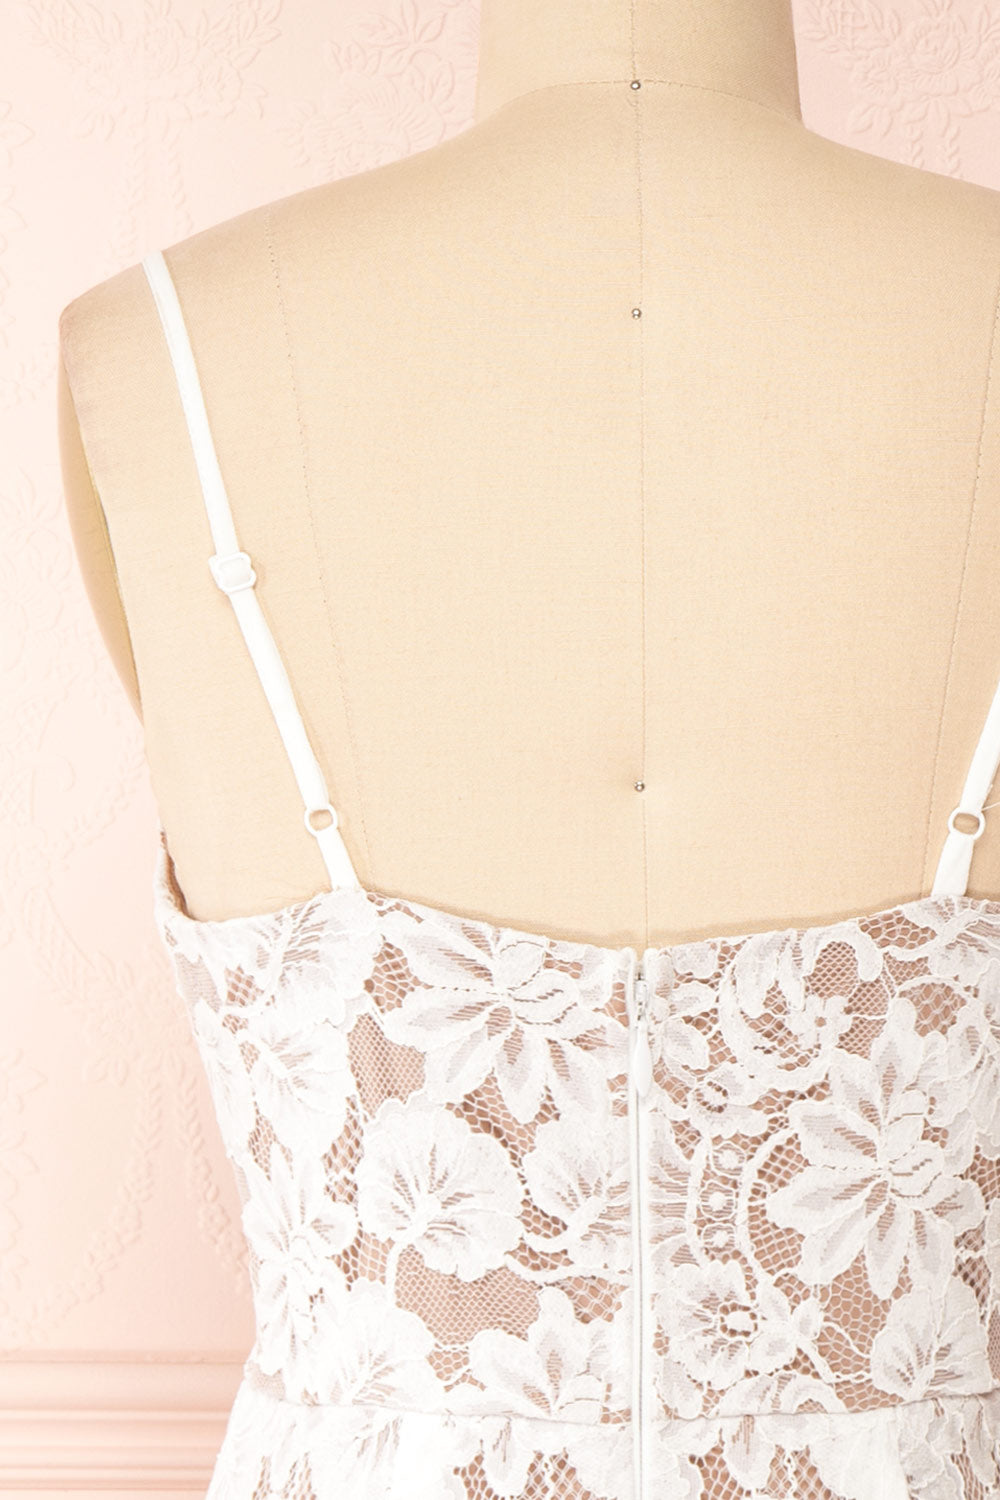 Dysis Ivory Floral Lace Midi Dress | La petite garçonne back close-up